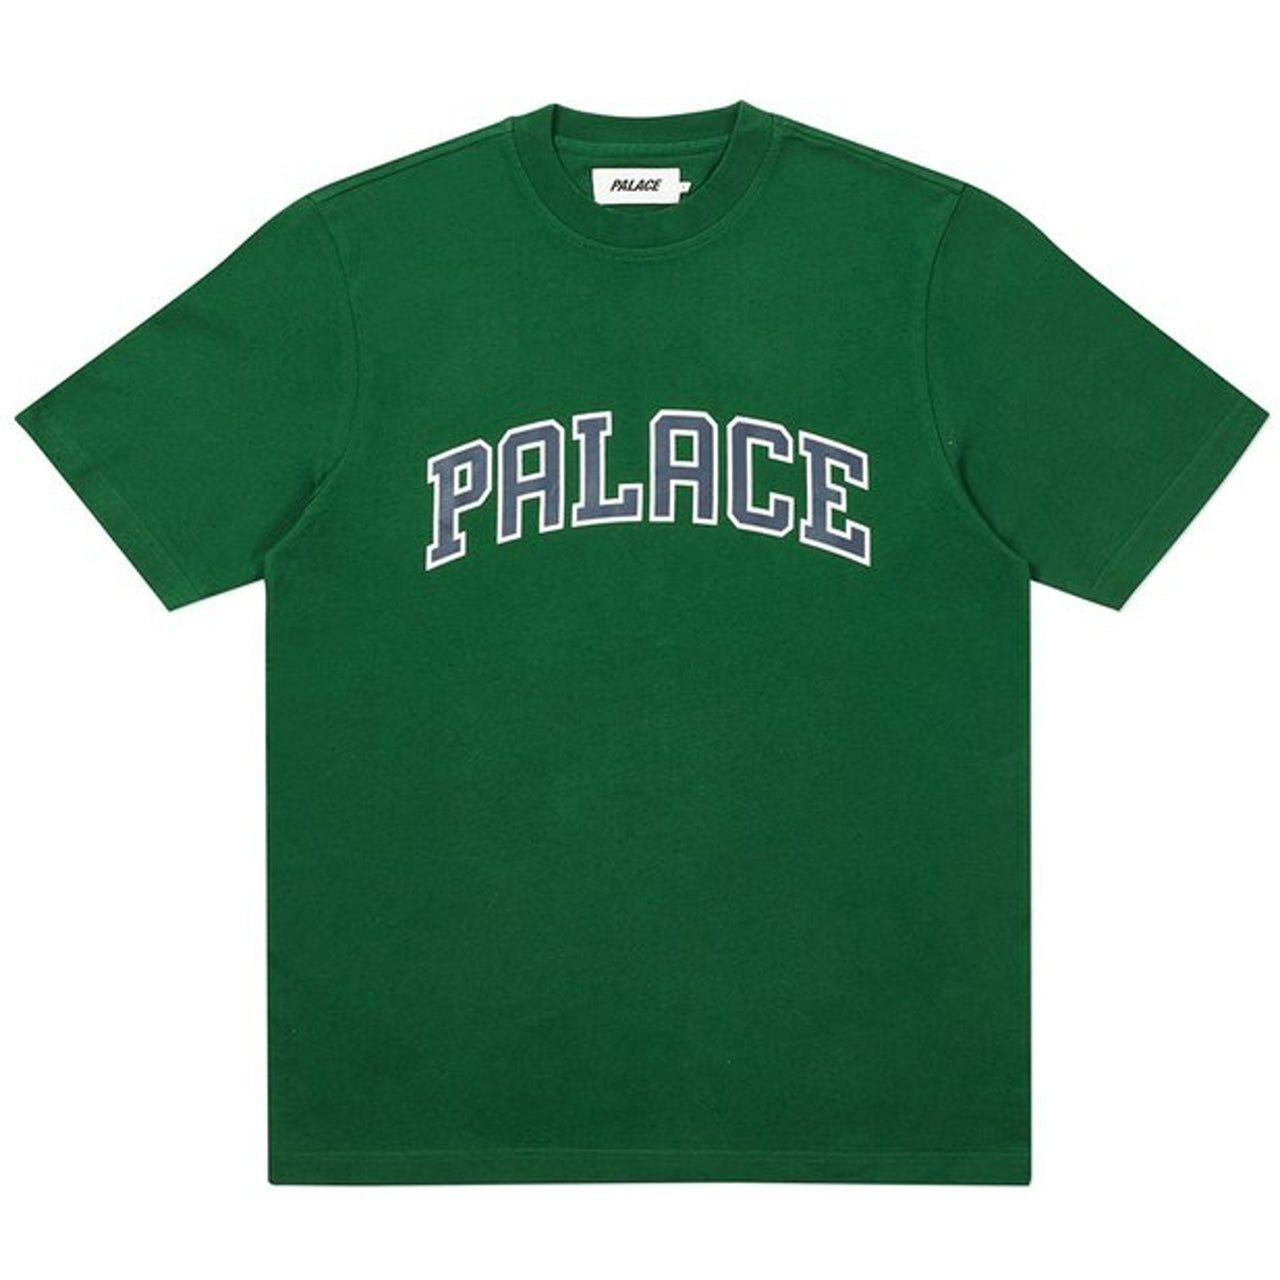 Palace Alas Tee "Green"